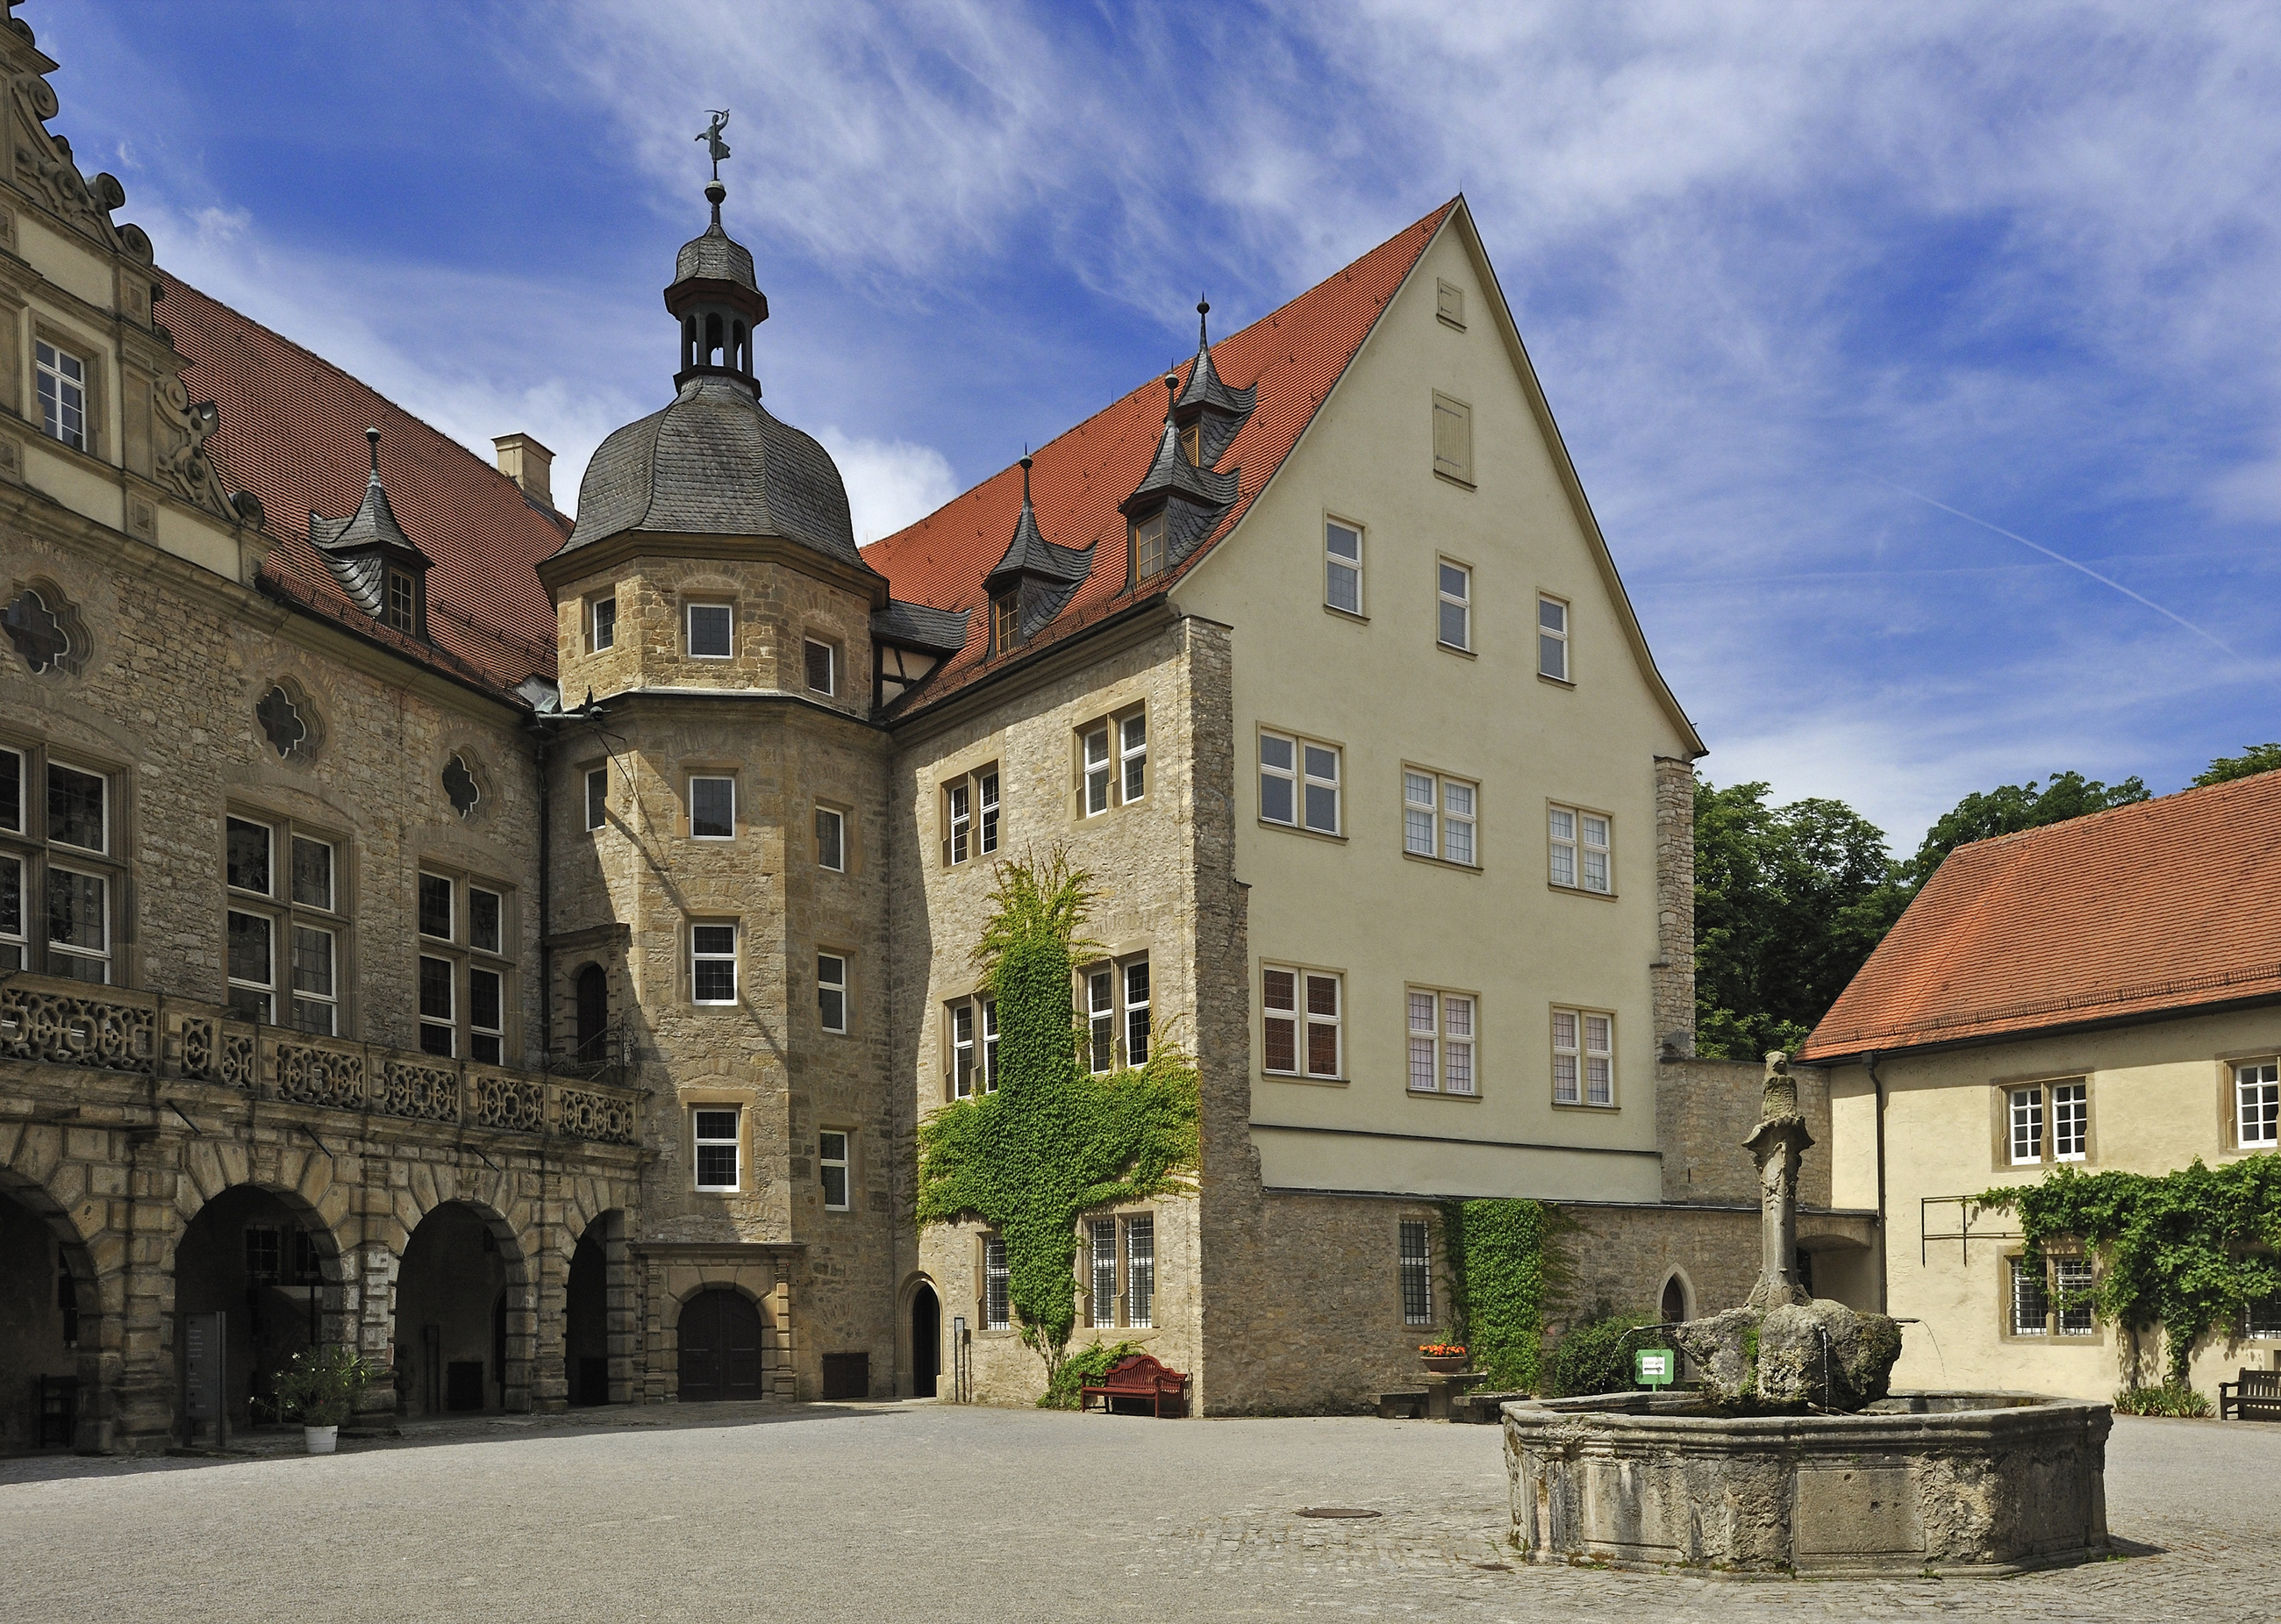 Schloss Weikersheim